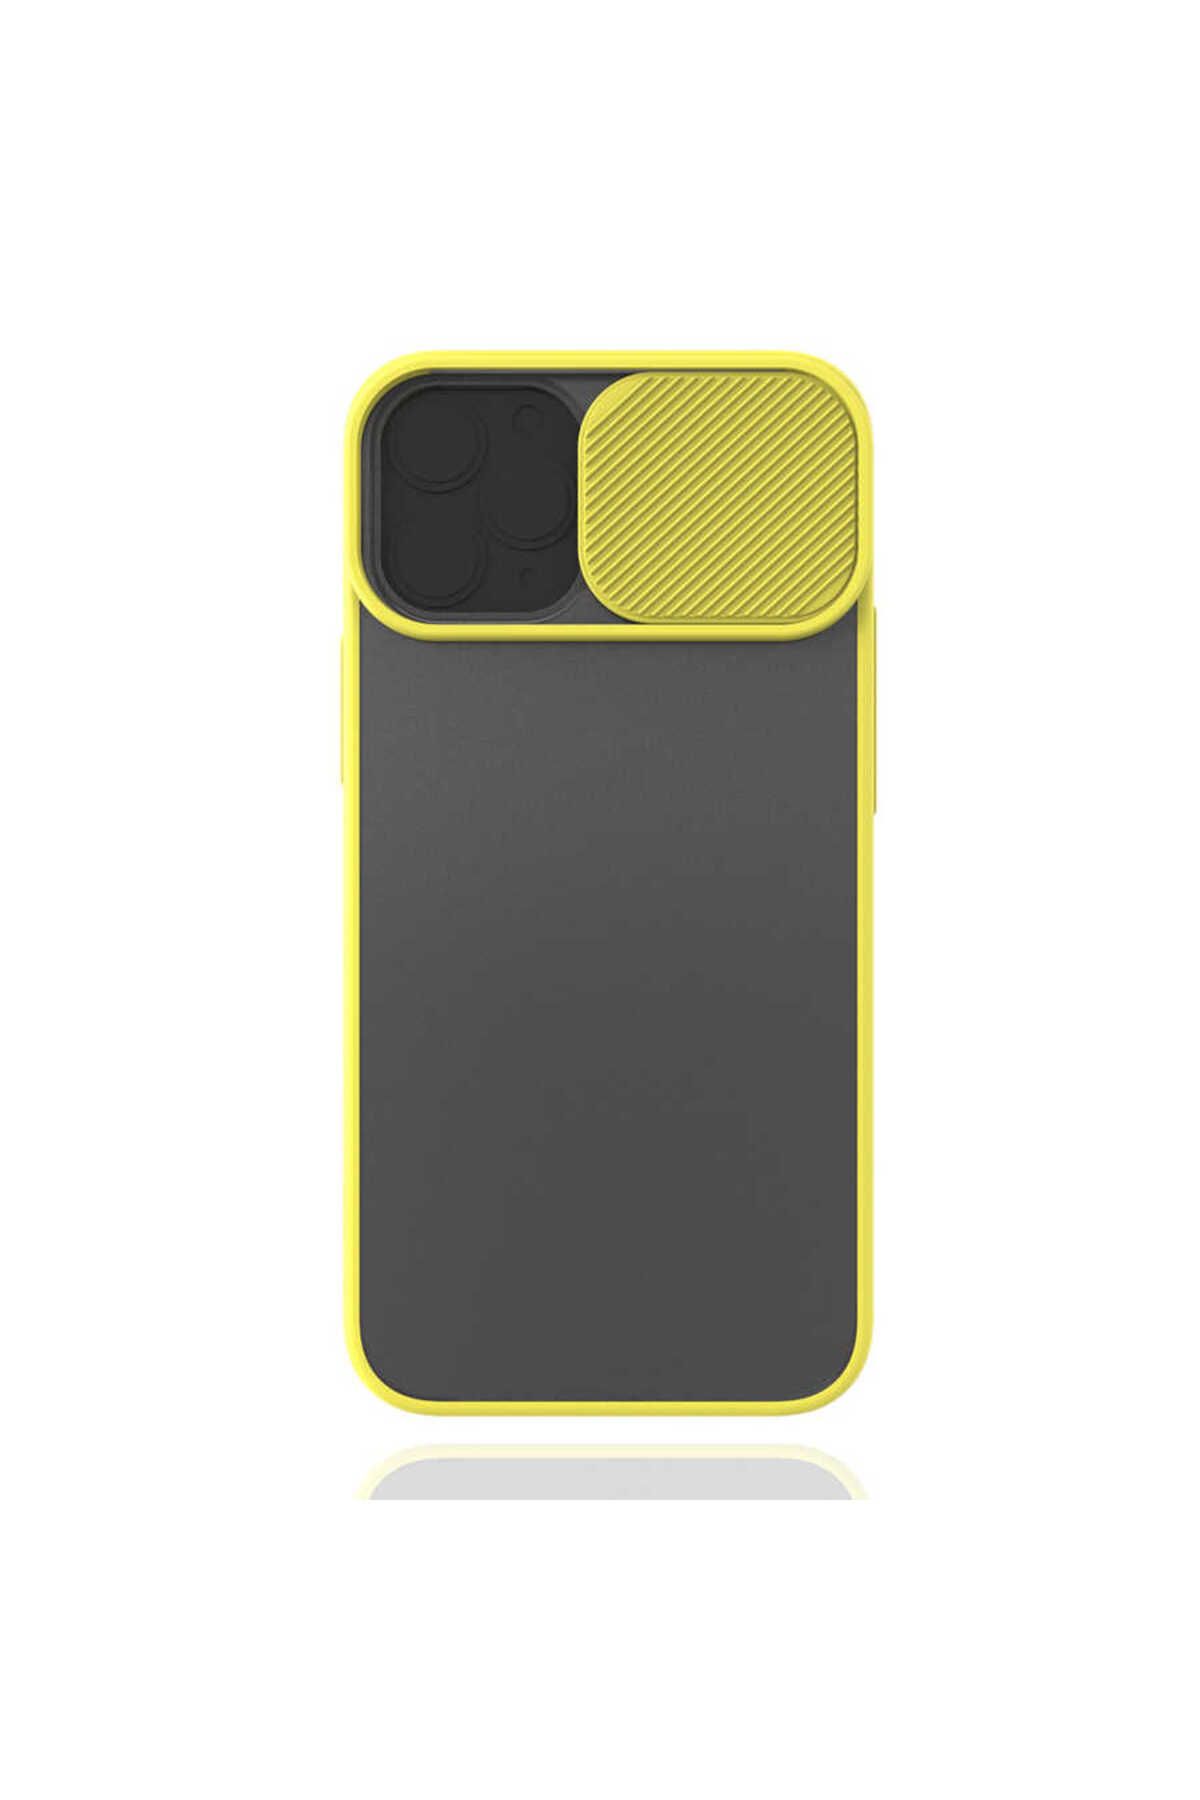 Bilişim Aksesuar iPhone 12 Mini Uyumlu Zore Lensi Kılıf-Sarı